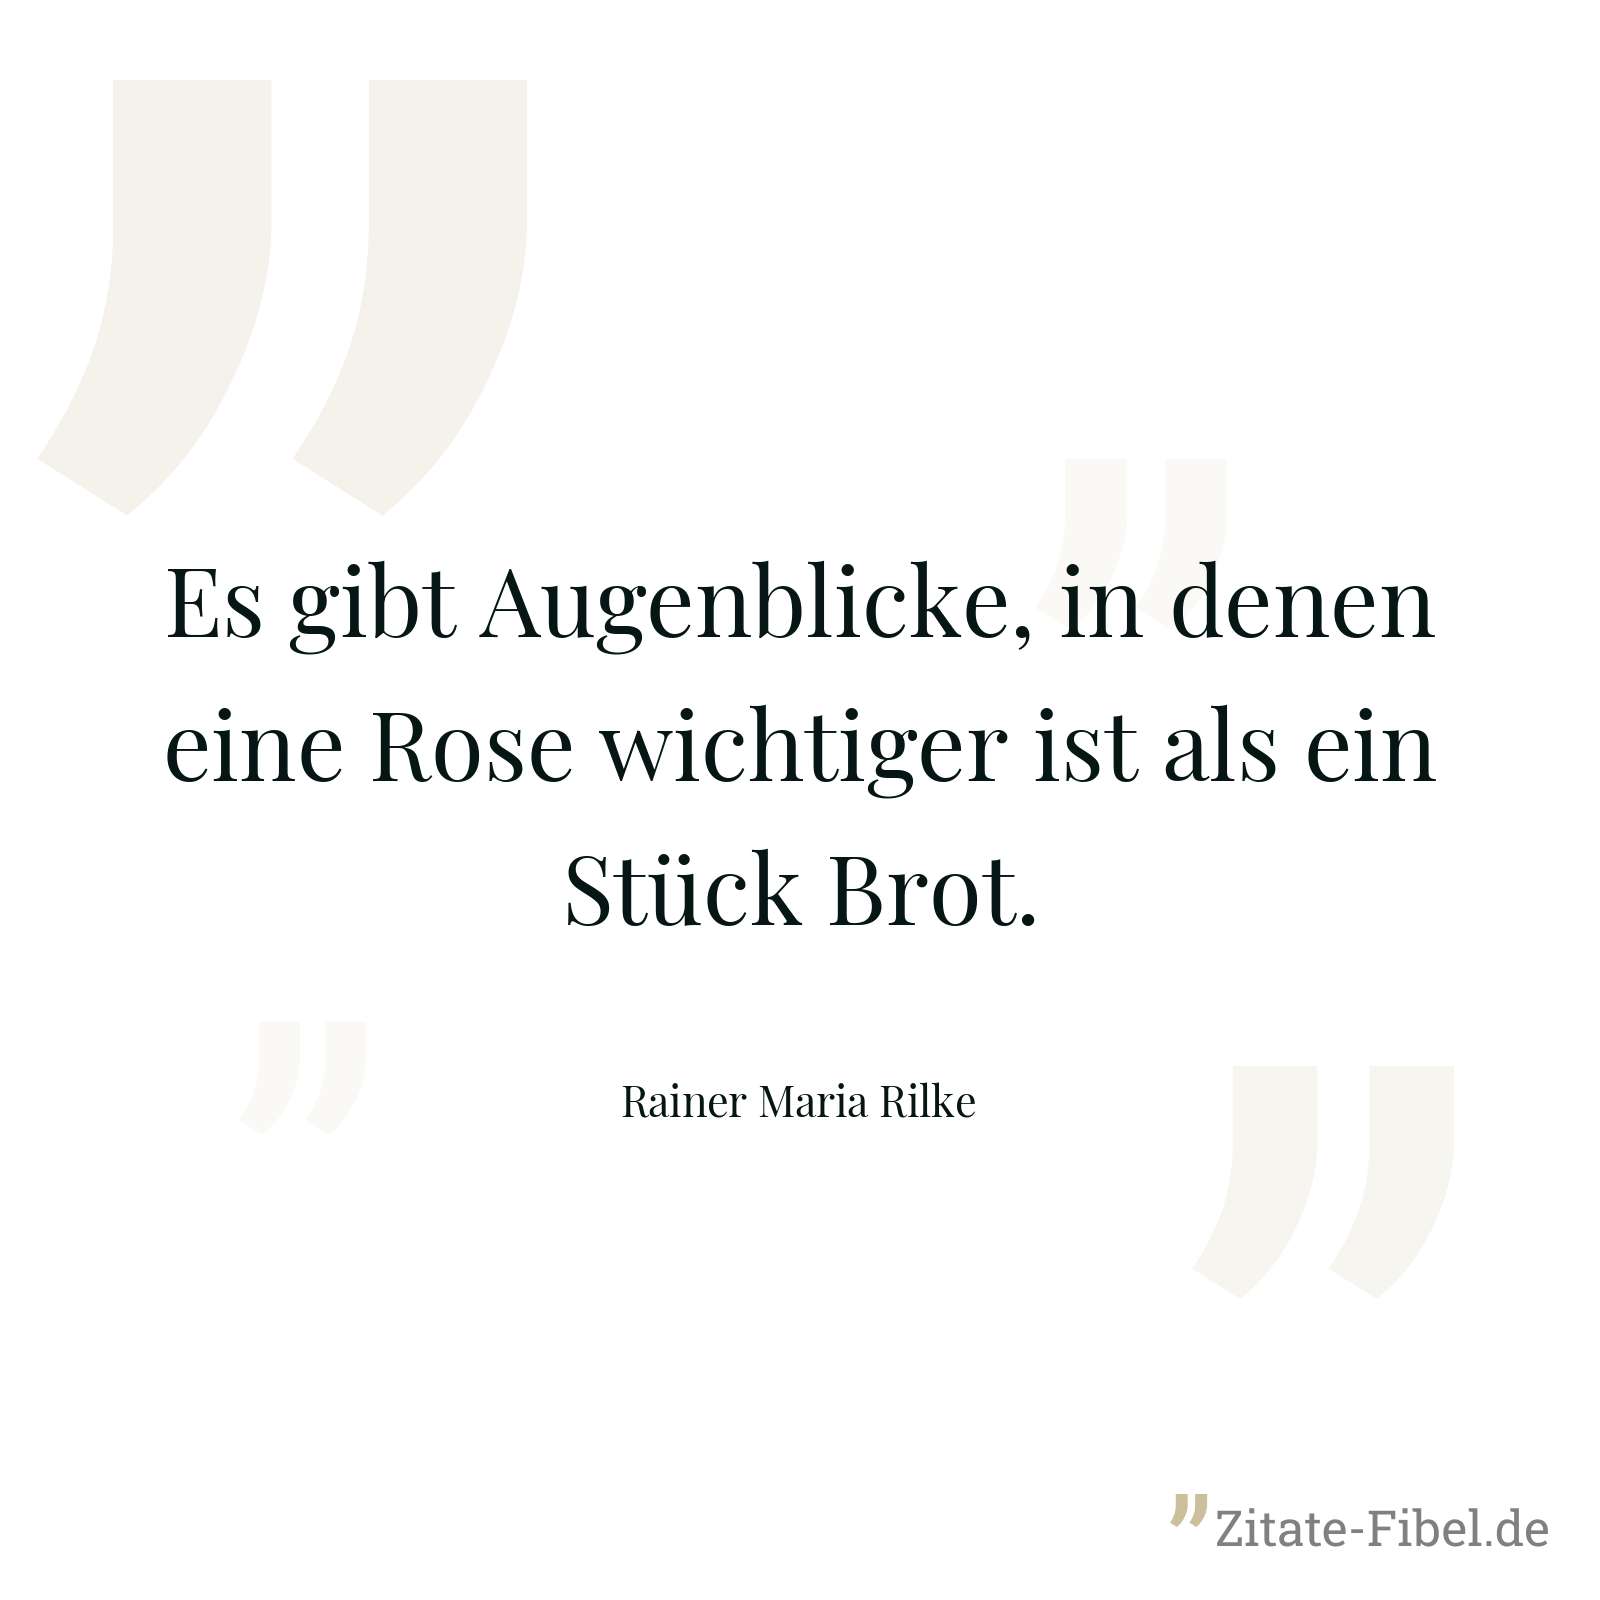 Es gibt Augenblicke, in denen eine Rose wichtiger ist als ein Stück Brot. - Rainer Maria Rilke